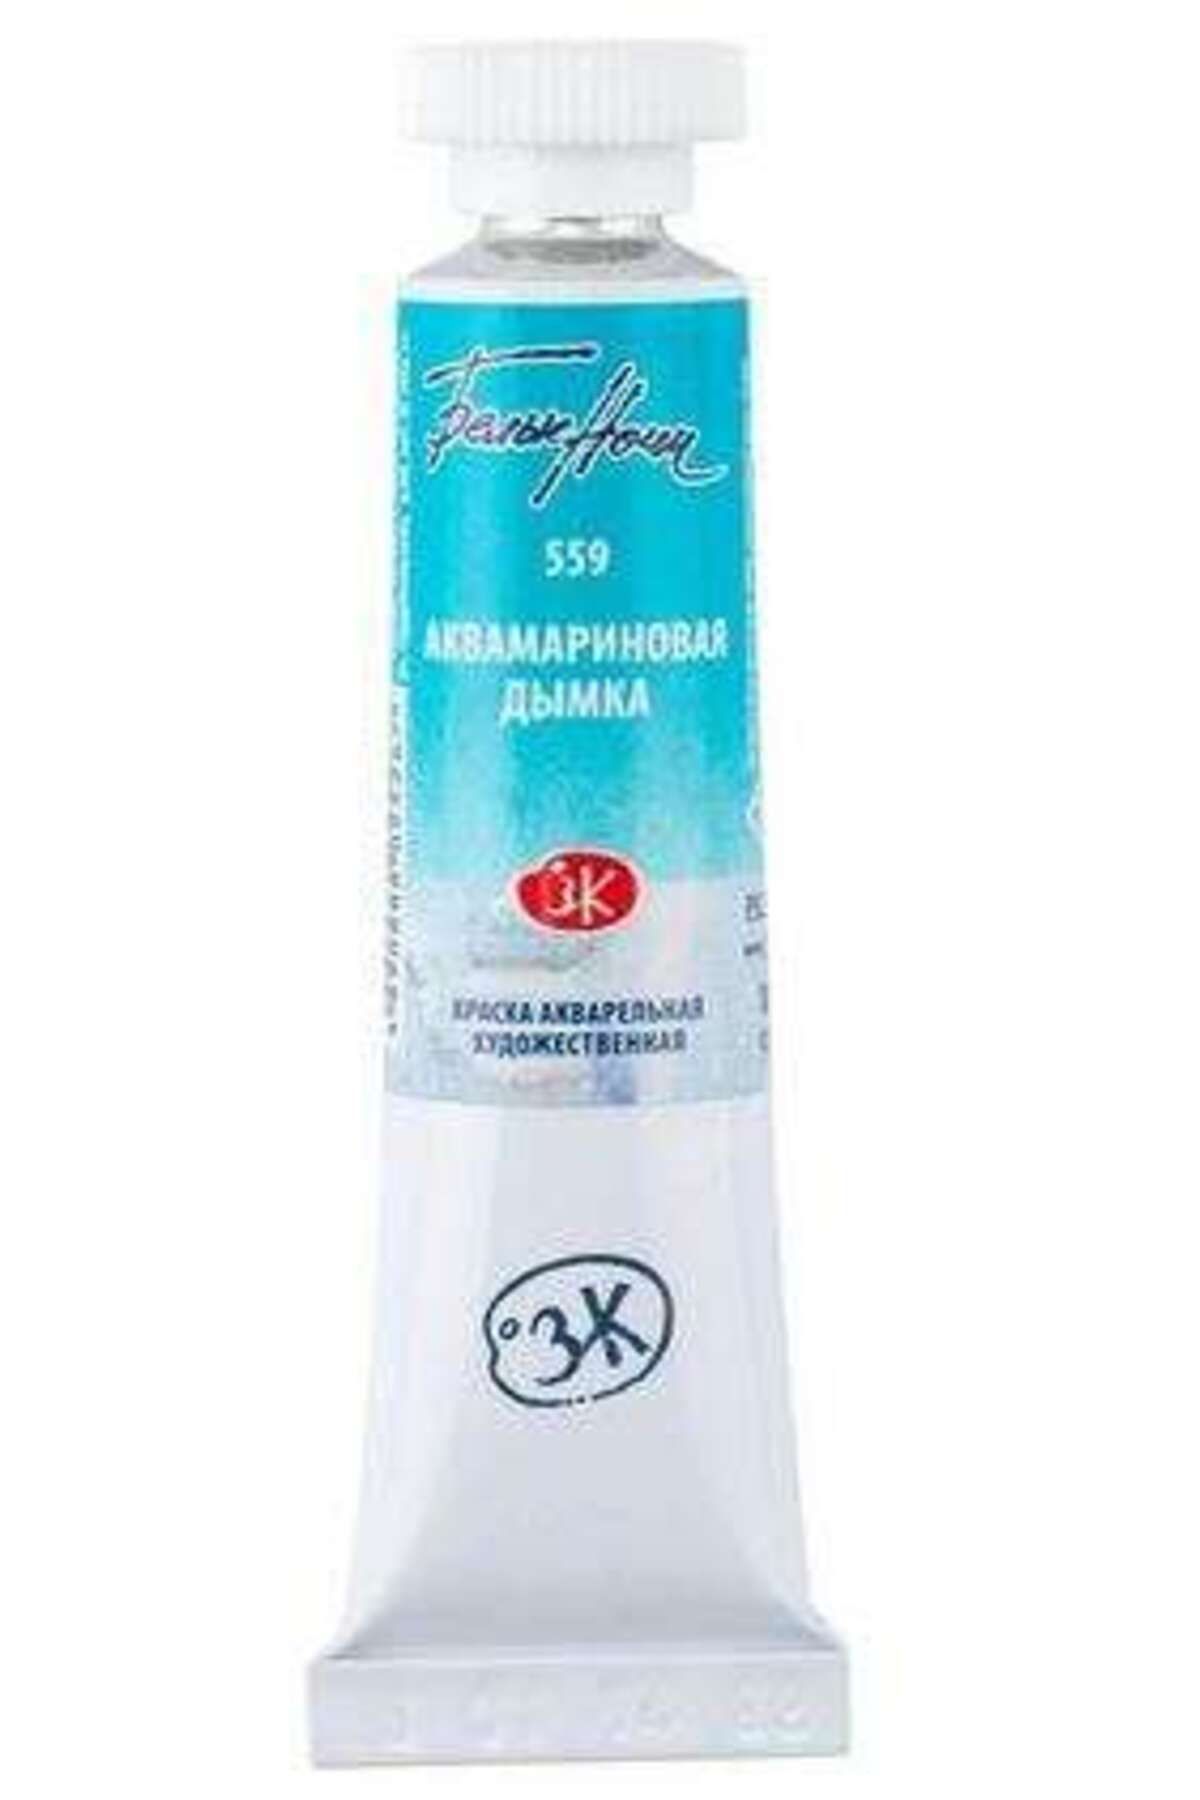 ST. PETERSBURG White Nights Extra-fine Tüp Sulu Boya 10 ml Aquamarine Mist 559